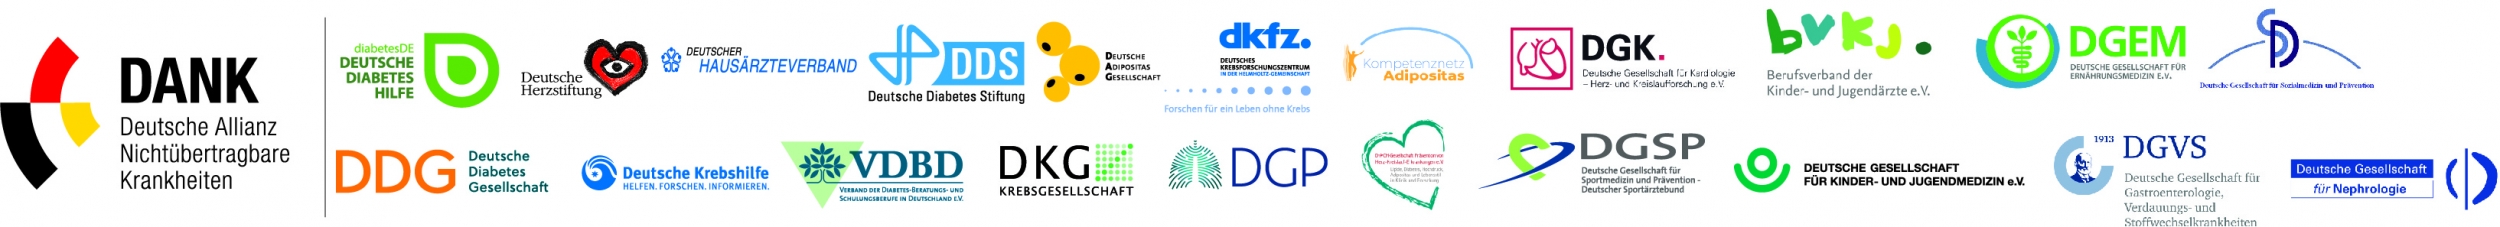 Logos der an DANK teilnehmenden Verbände